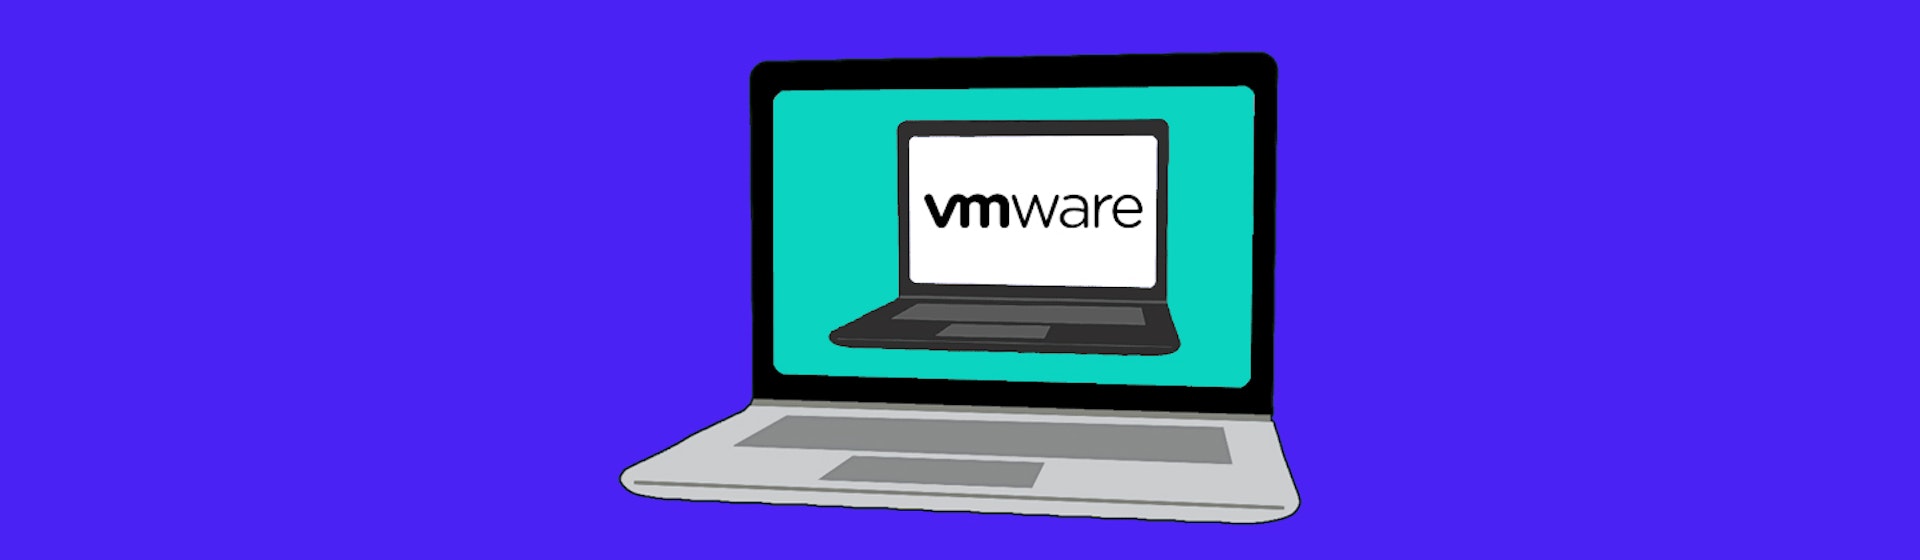 ¿Qué es VMware? Aprende a crear computadoras virtuales para ser experto en cloud computing